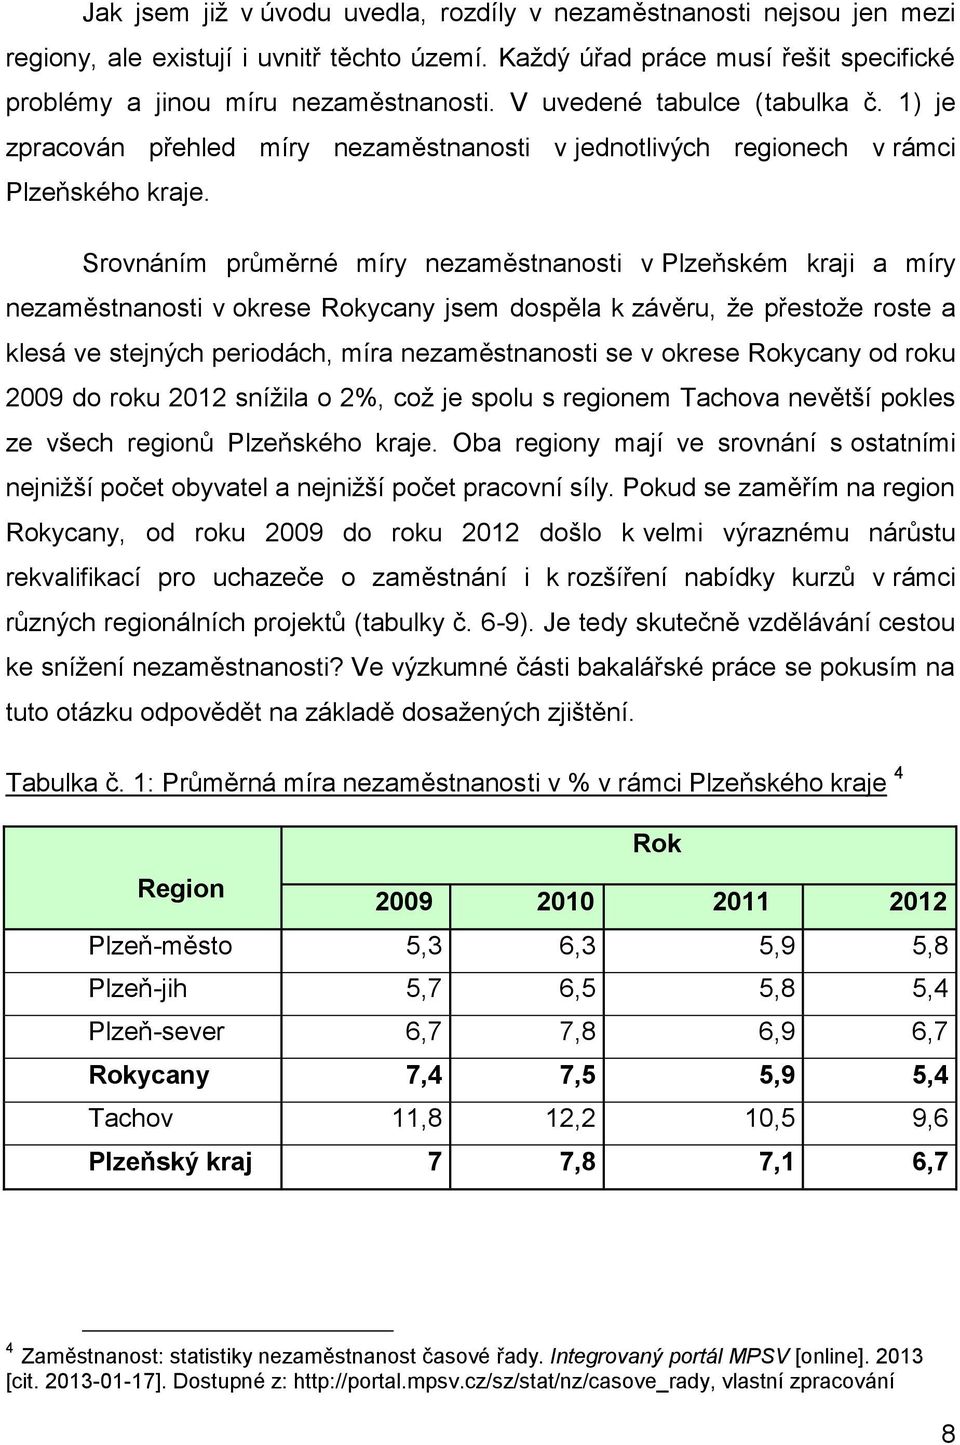 Srovnáním průměrné míry nezaměstnanosti v Plzeňském kraji a míry nezaměstnanosti v okrese Rokycany jsem dospěla k závěru, že přestože roste a klesá ve stejných periodách, míra nezaměstnanosti se v